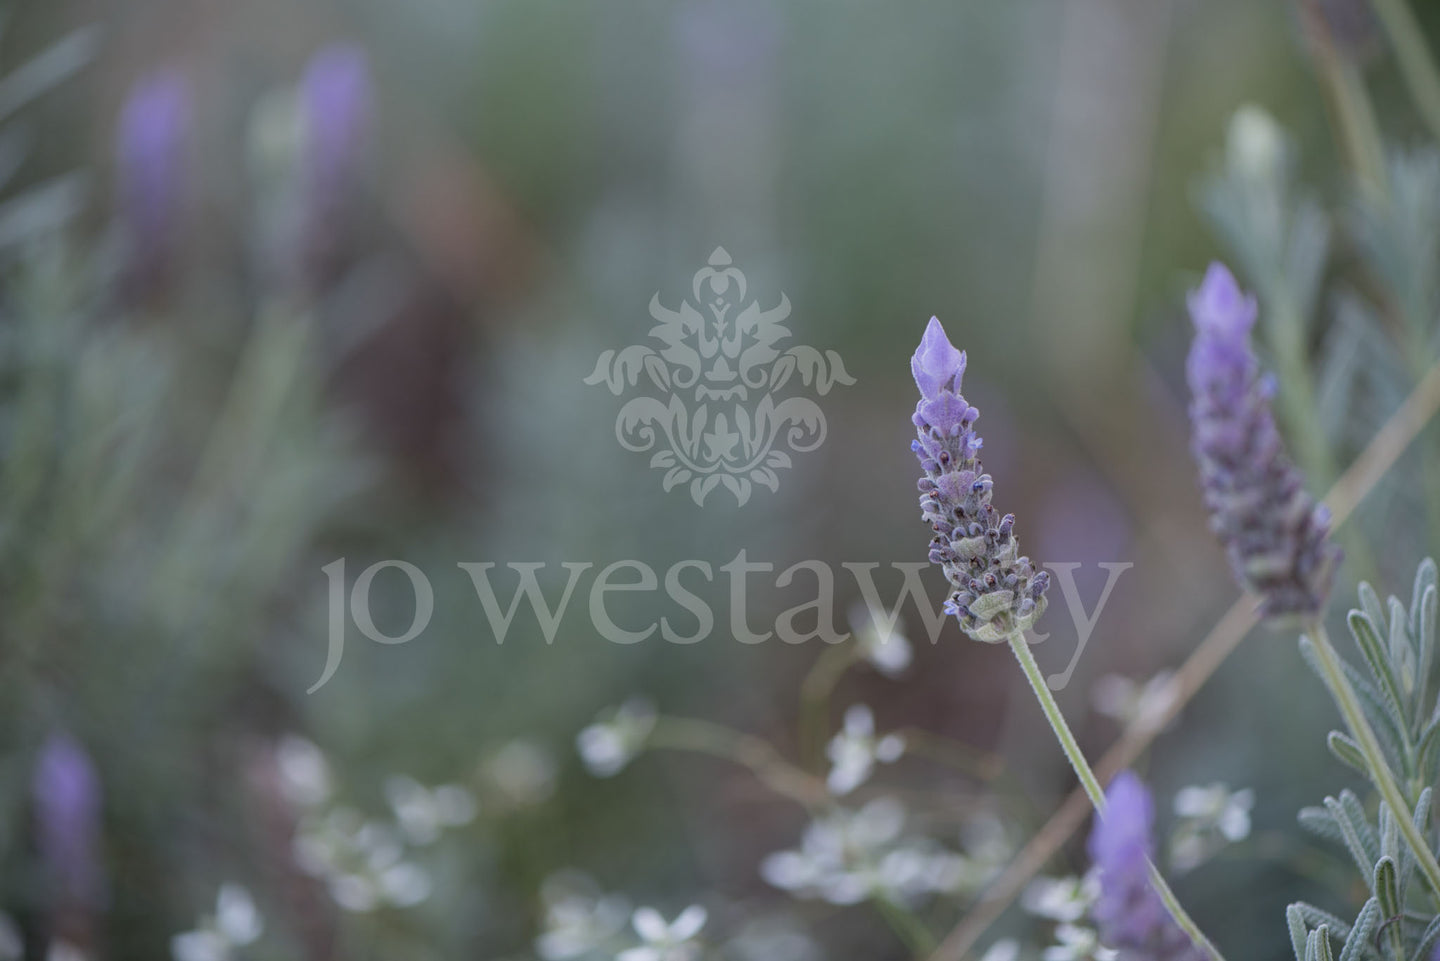 Jo Westaway stock: 190525-183